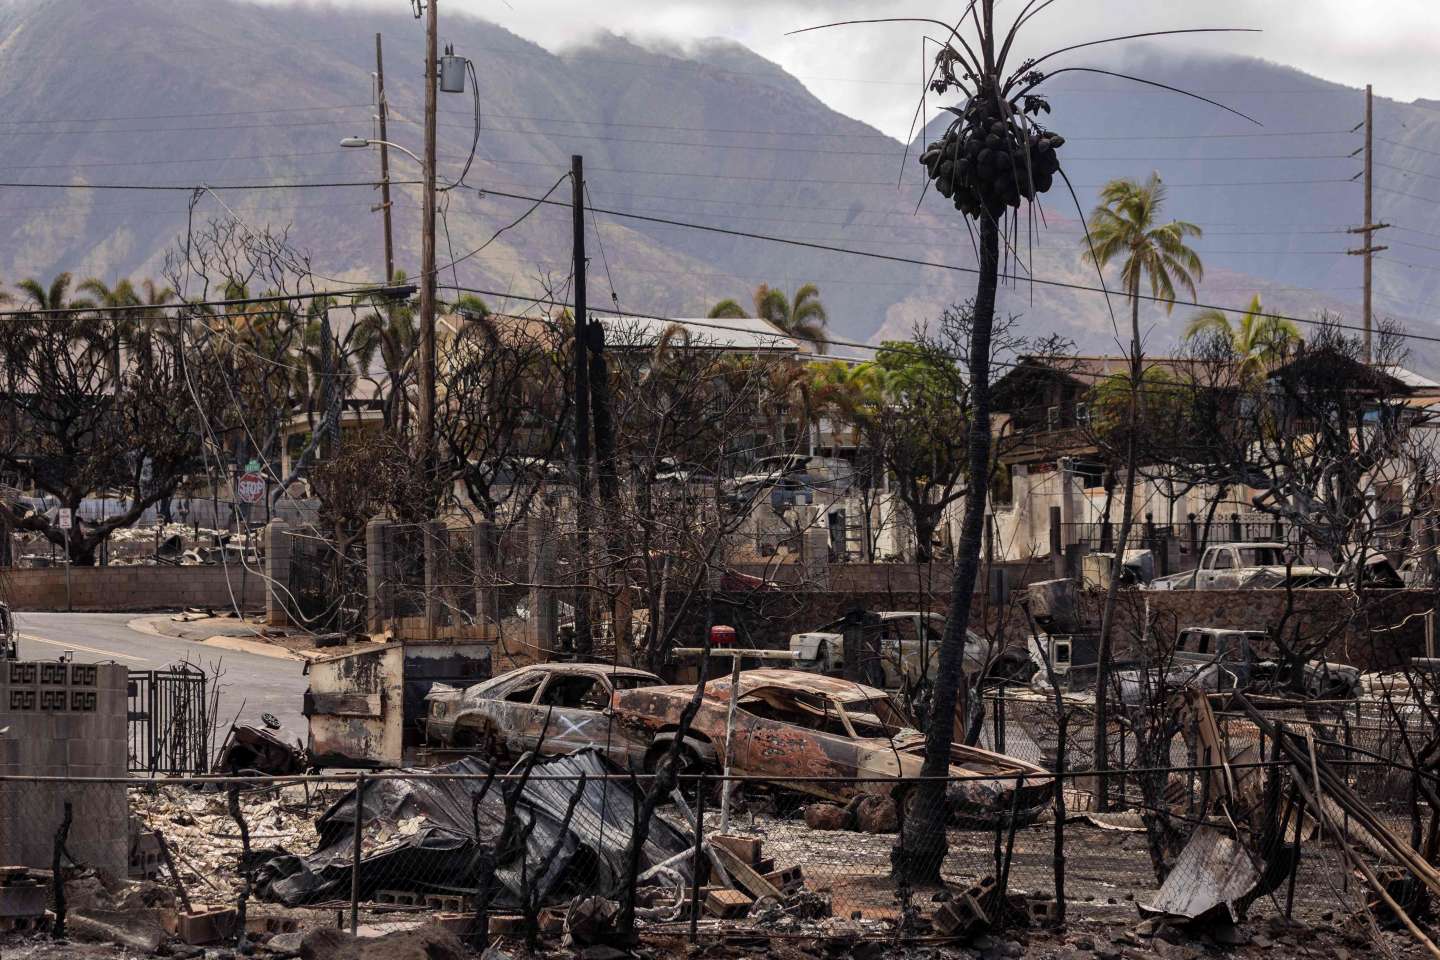 Incendies à Hawaï : comment le brasier a piégé les habitants de la cité balnéaire de Lahaina